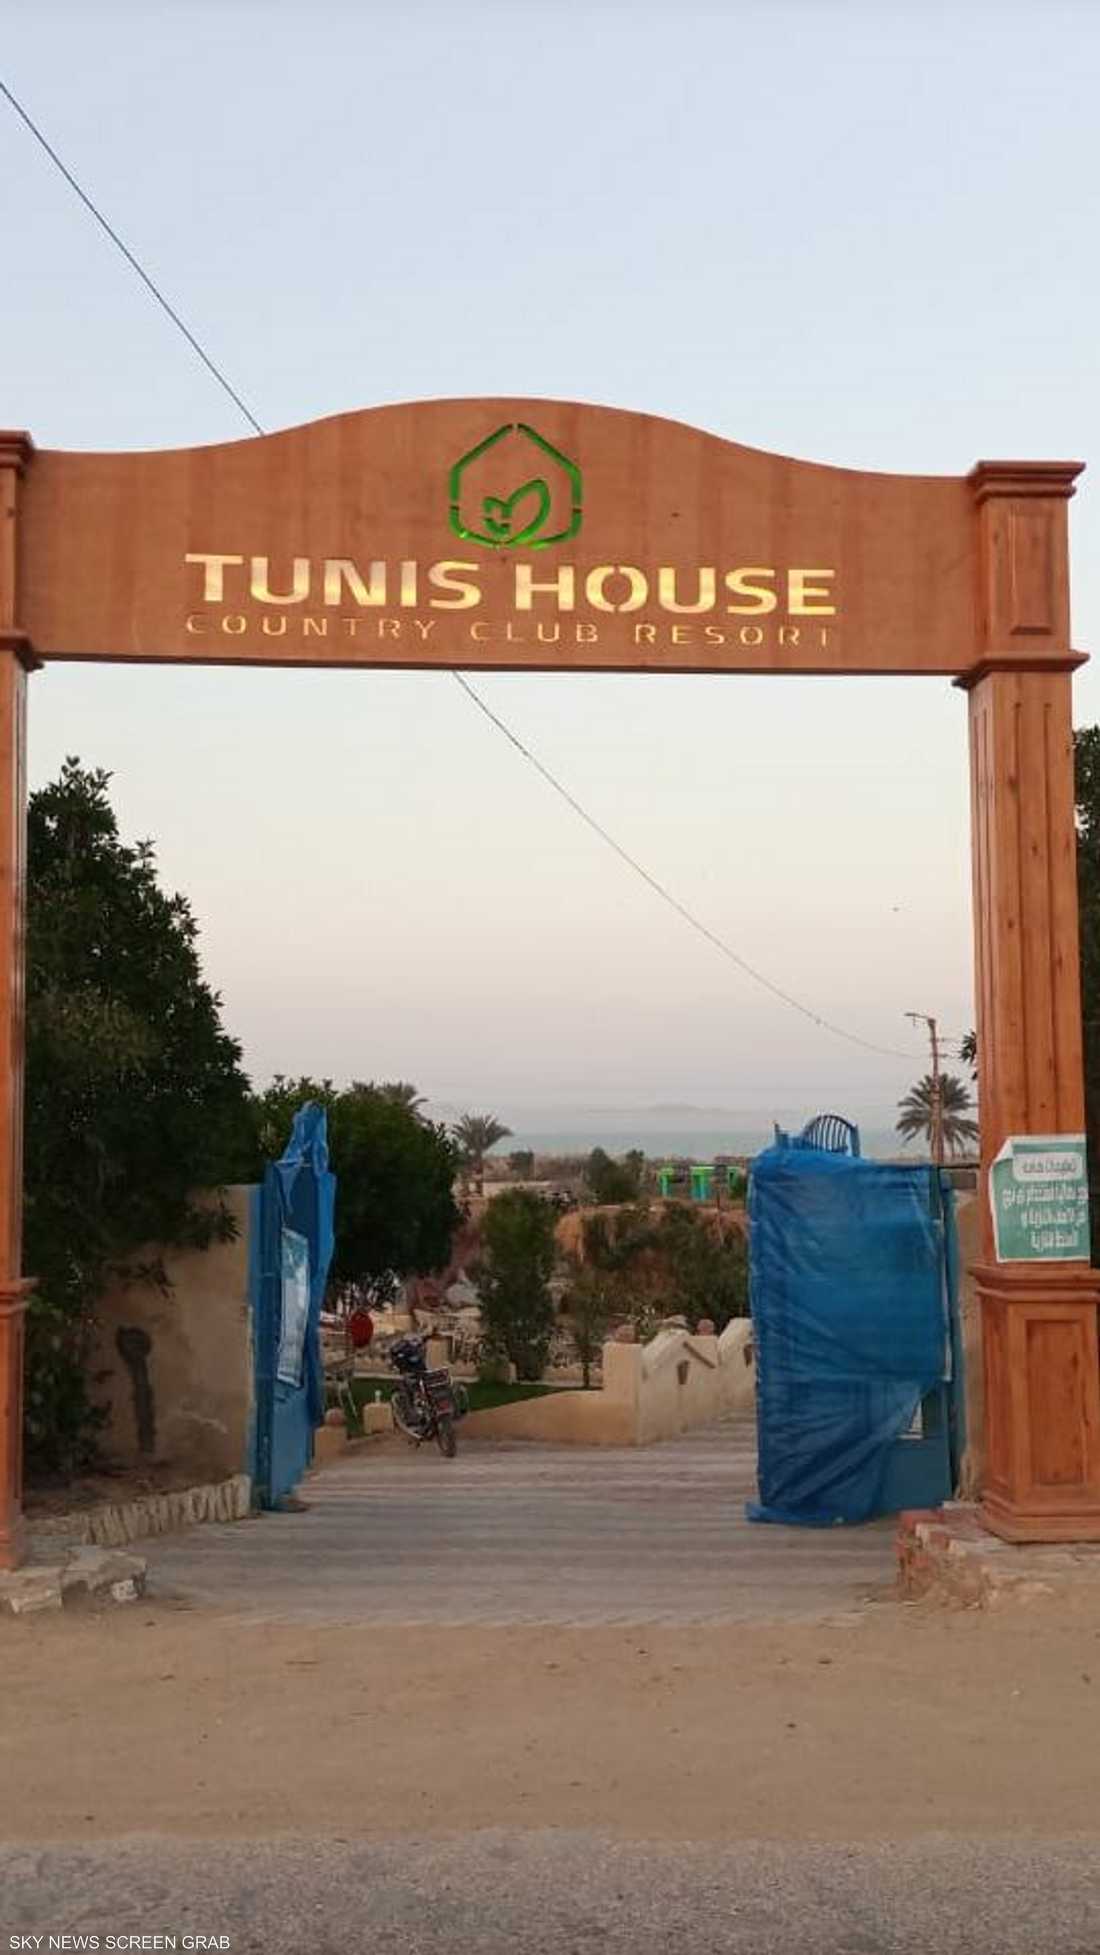 على بعد أكثر من 100 كيلومتر جنوب القاهرة المصرية تقع قرية تونس الشهيرة بمحافظة الفيوم، والمتخصصة في تعليم صناعة الخزف والفخار.